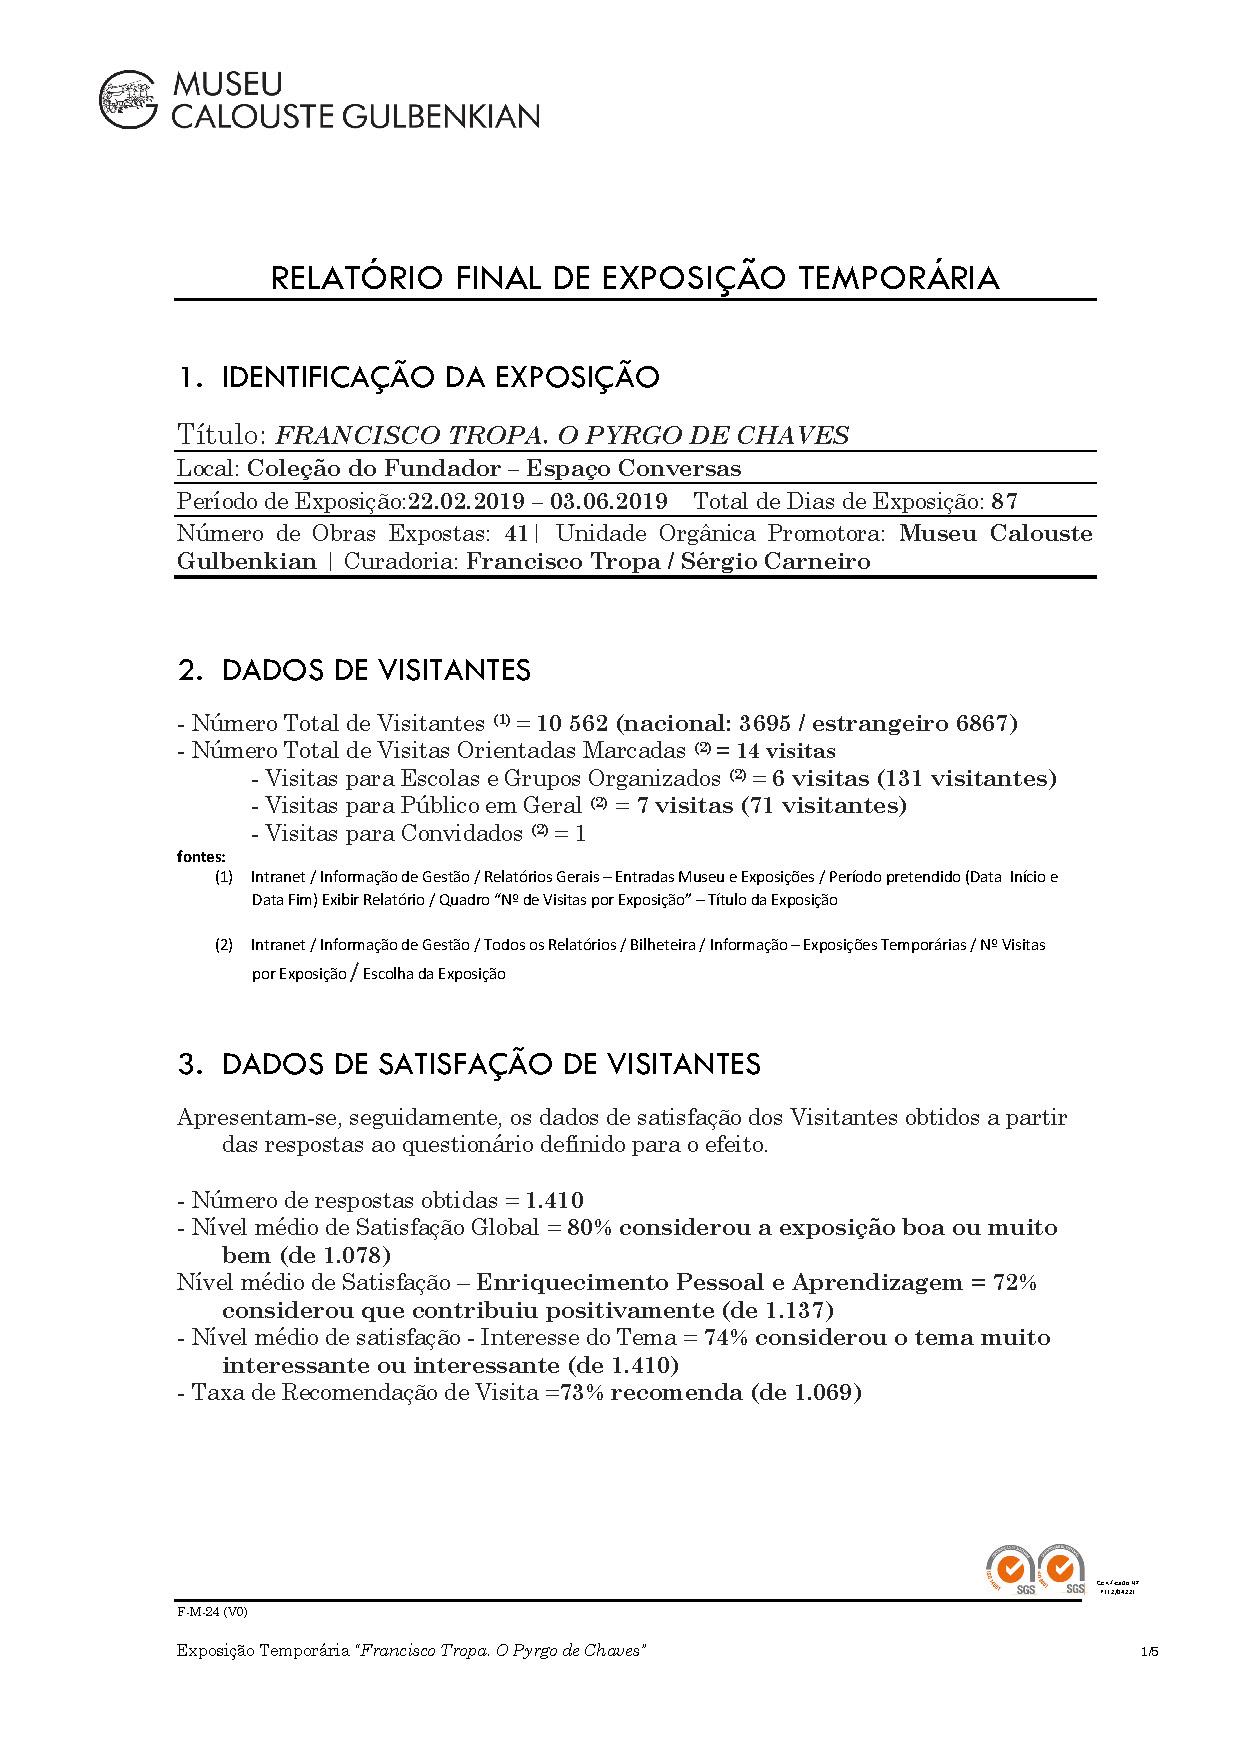 RelFinal_FranciscoTropa_rasurado_Page_1